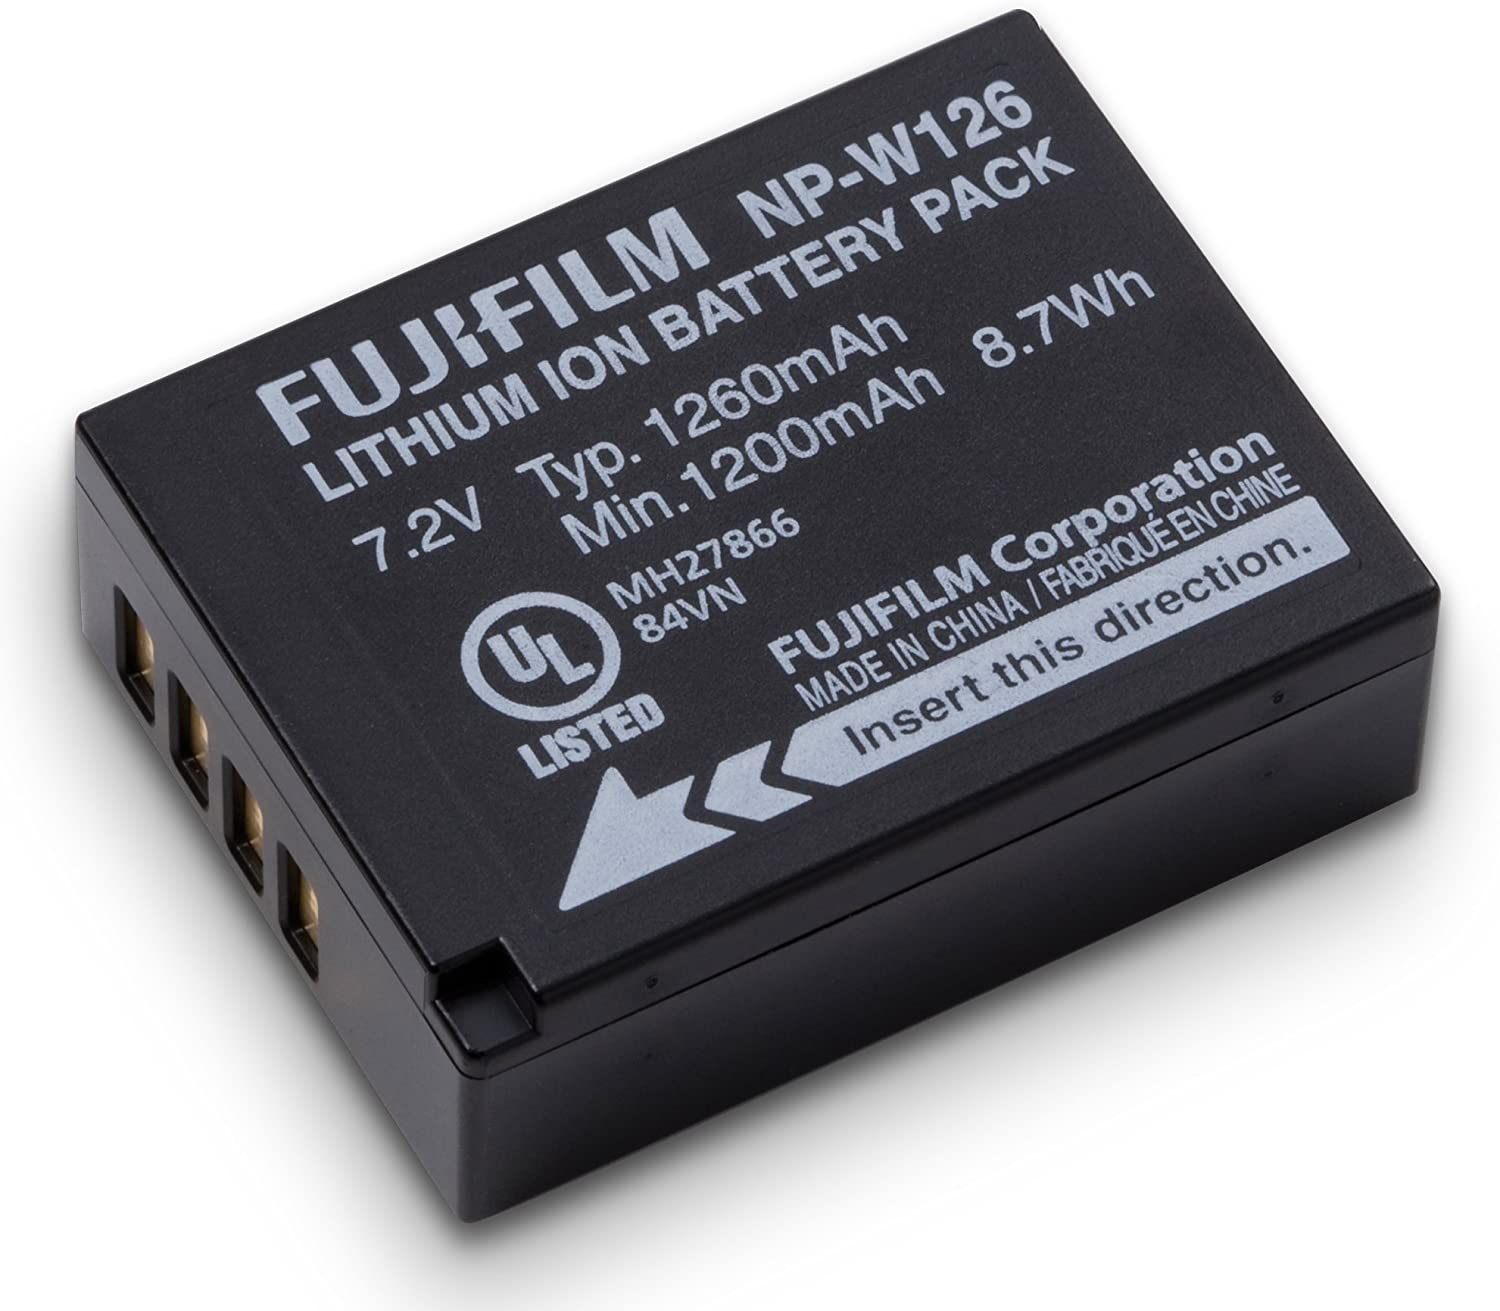 Pin NP-W126 cho máy ảnh Fujifilm